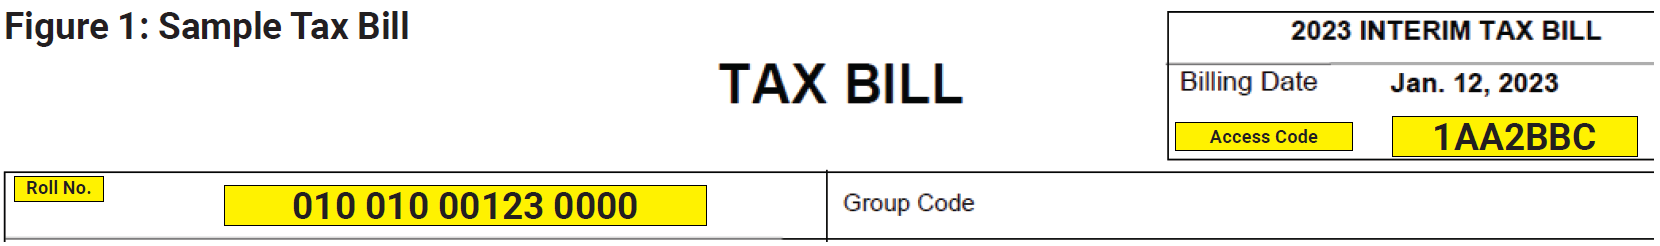 Figure 1: Sample Tax Bill